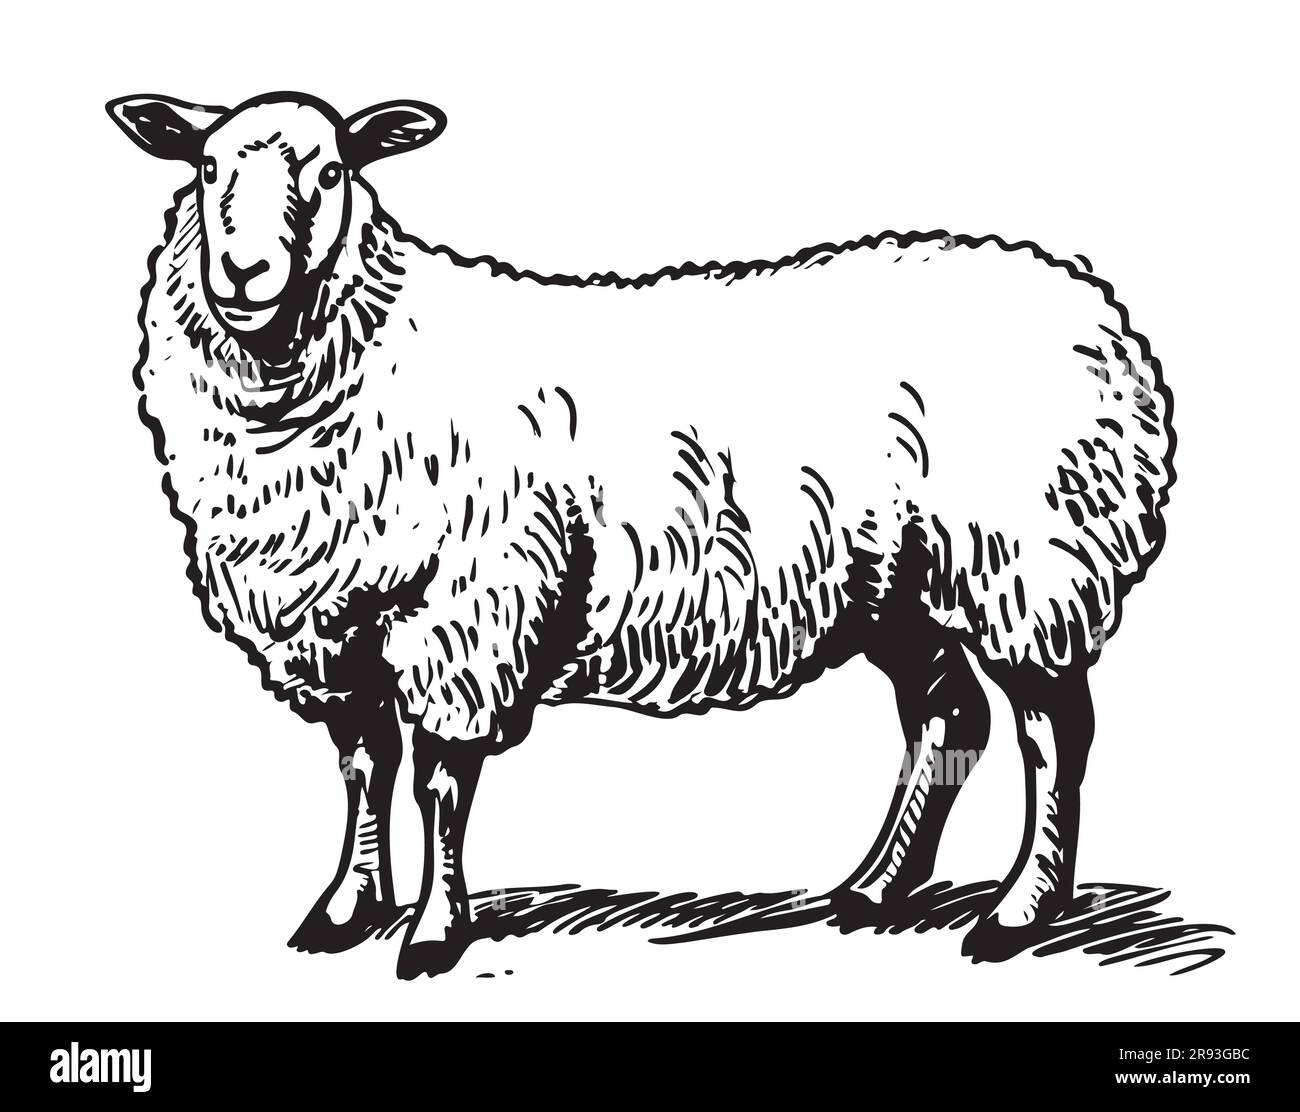 Dessin de reproduction de moutons mignon dessiné à la main dans un dessin de style de caniche dessin de dessin de dessin de dessin de dessin Illustration de Vecteur